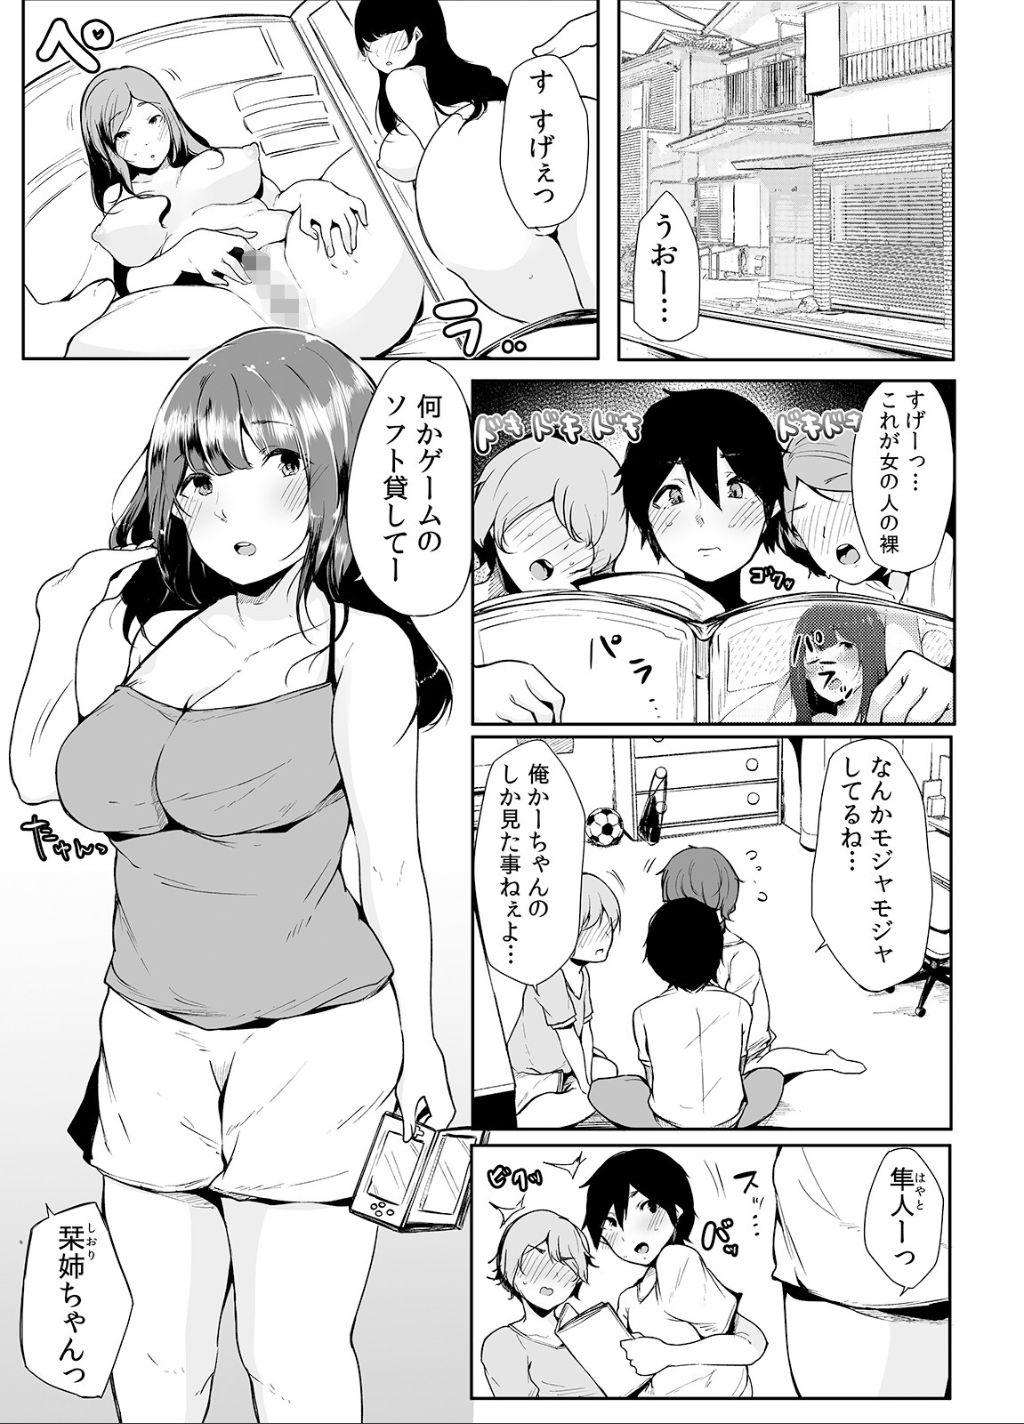 Feet Otouto ni Ero Manga to Onaji Koto o Sare Chau o Nee-chan no Hanashi 1 - Original Stepdad - Page 4